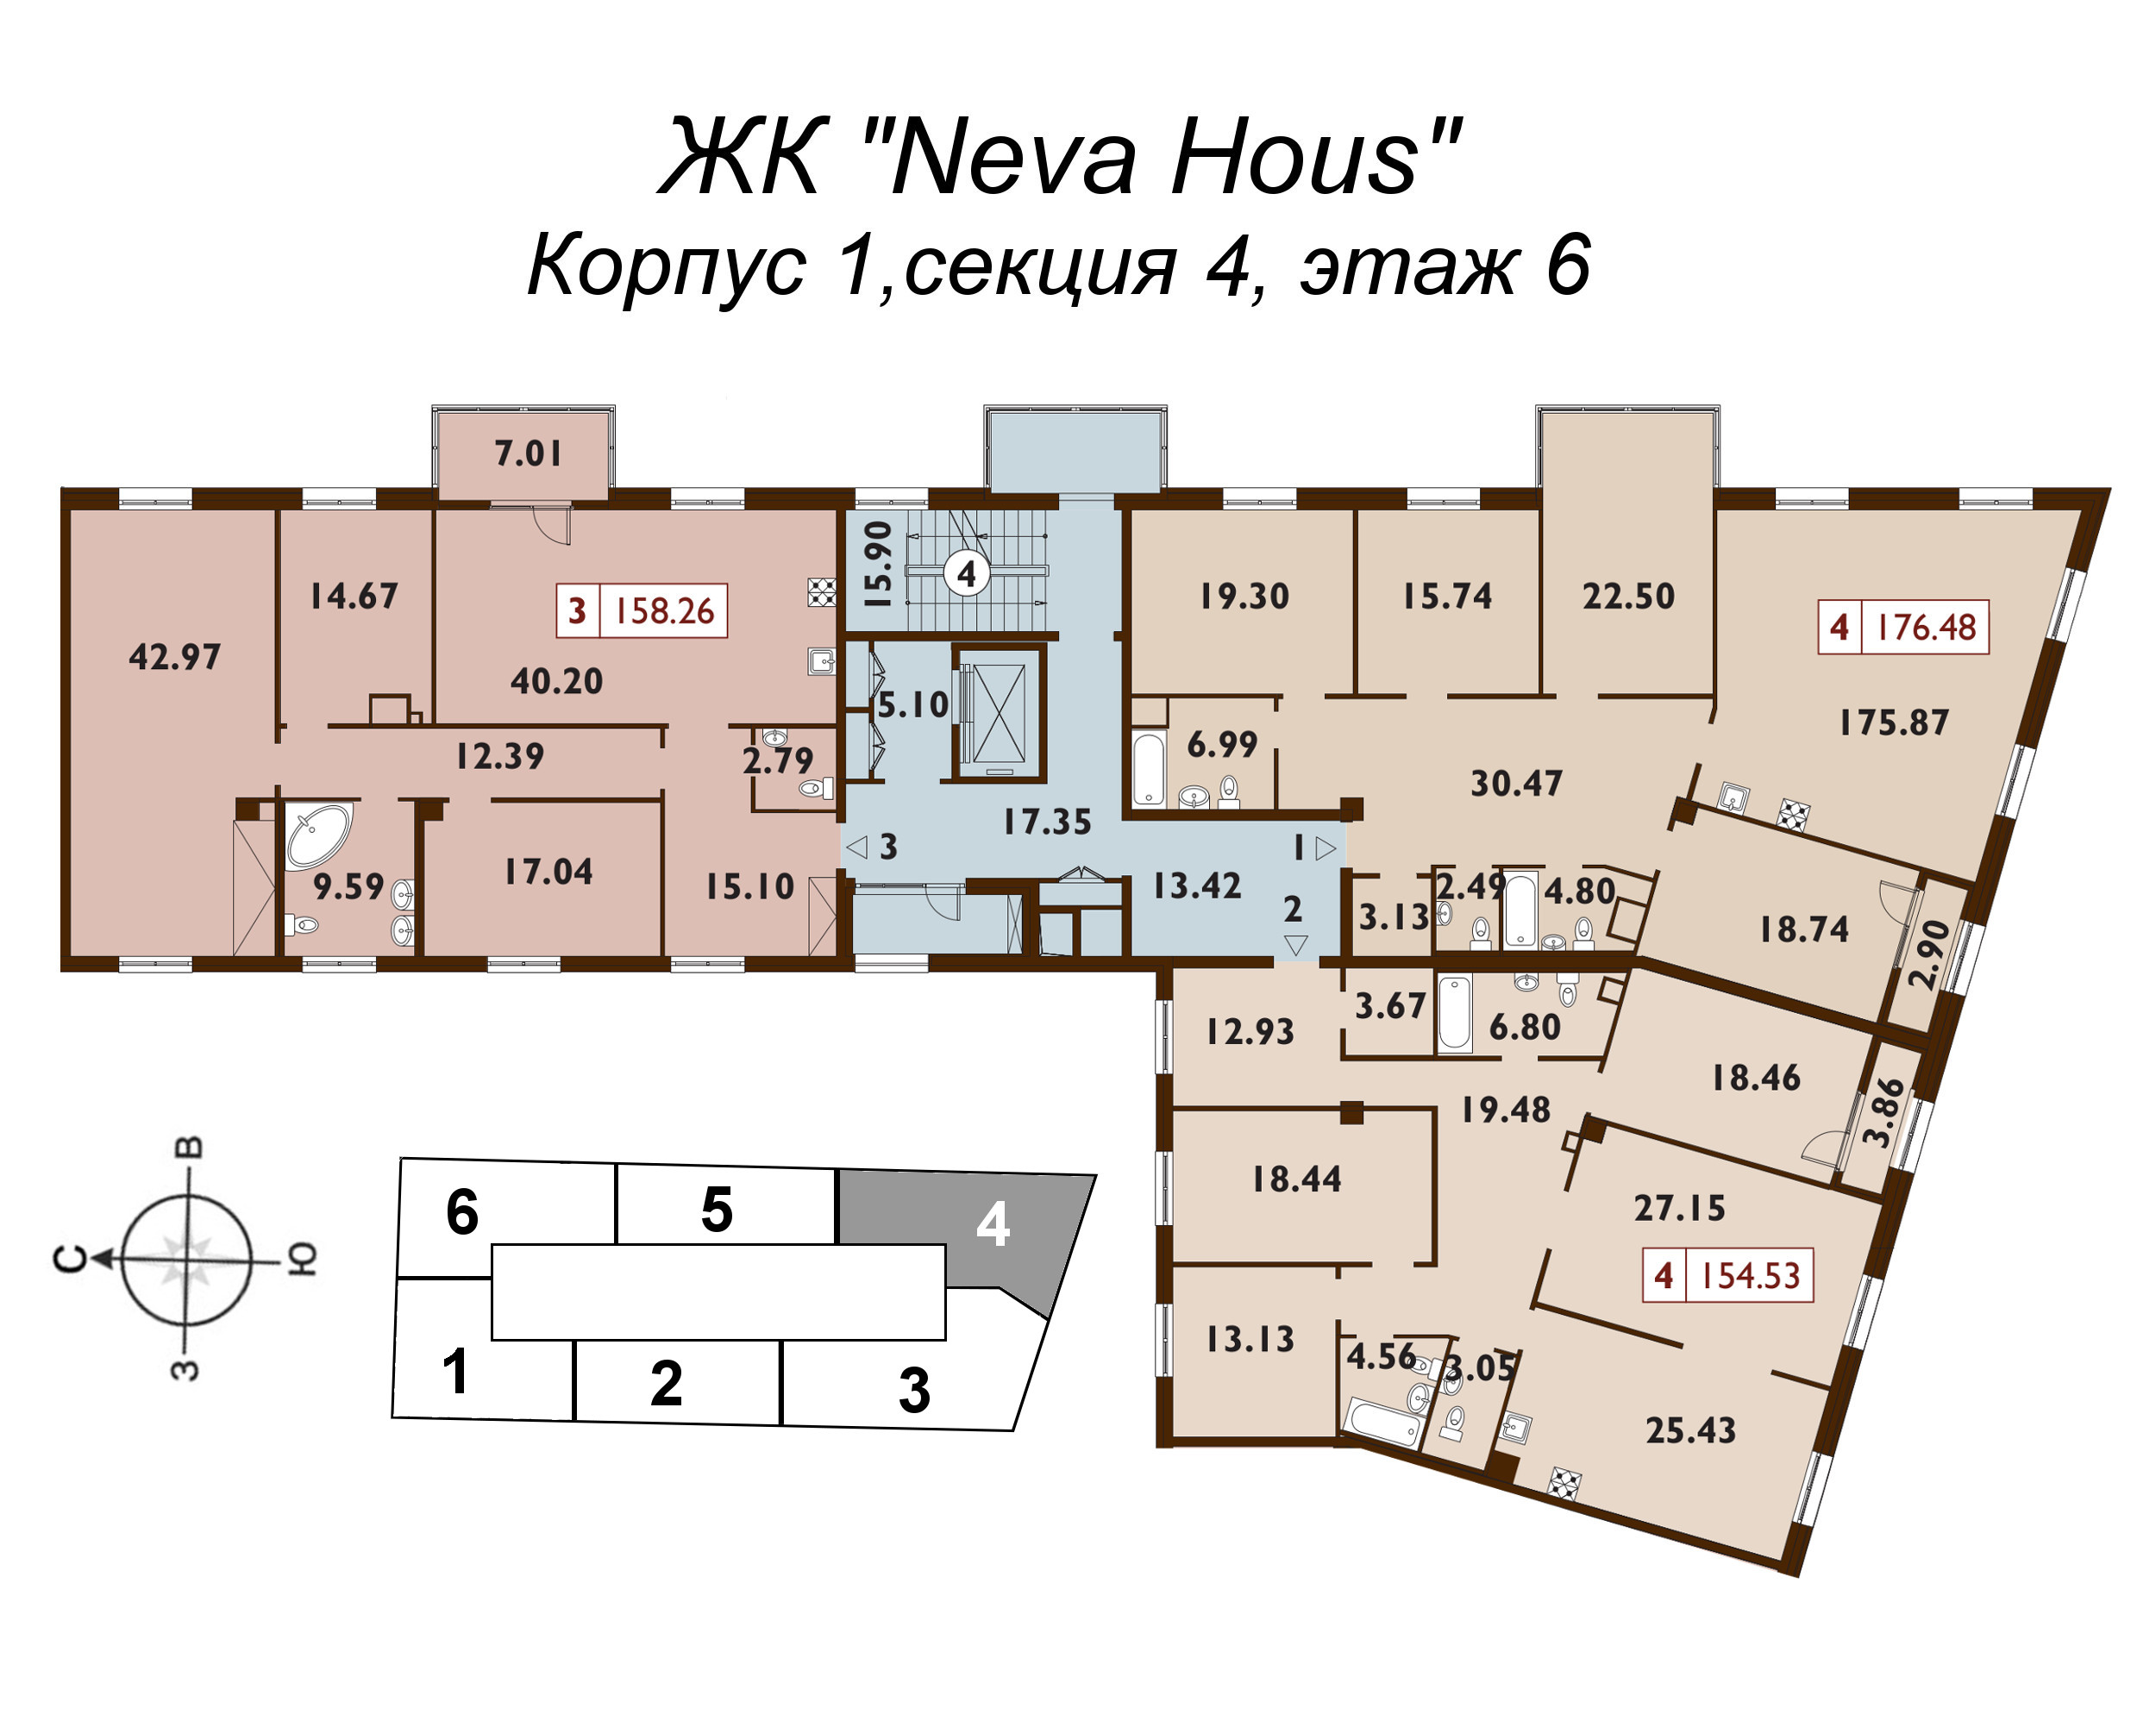 5-комнатная (Евро) квартира, 154.8 м² в ЖК "Neva Haus" - планировка этажа